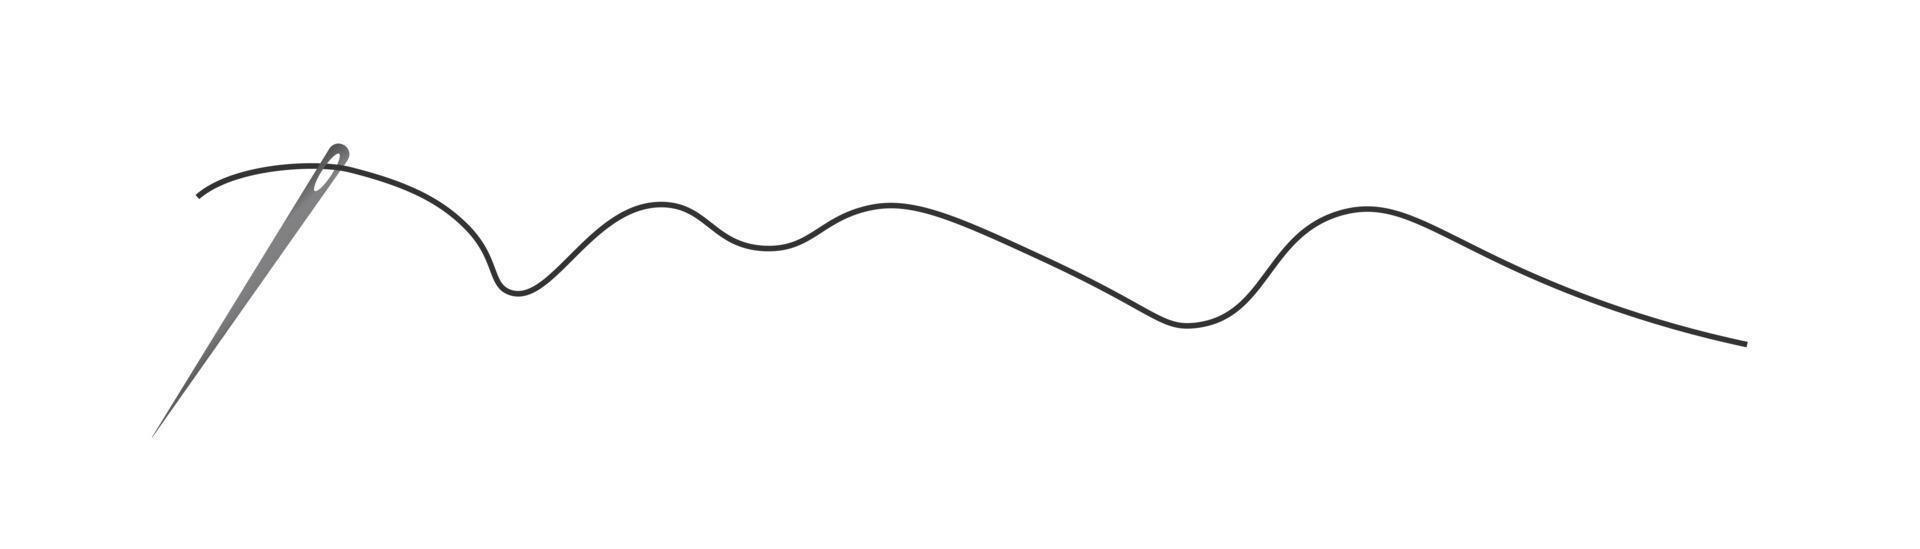 vecteur d'icône de silhouette d'aiguille et de fil. logo de tailleur avec symbole d'aiguille et fil incurvé, outil de couture de tailleur et de cordonnier, élément de couture. aiguille et fil de couleur foncée.